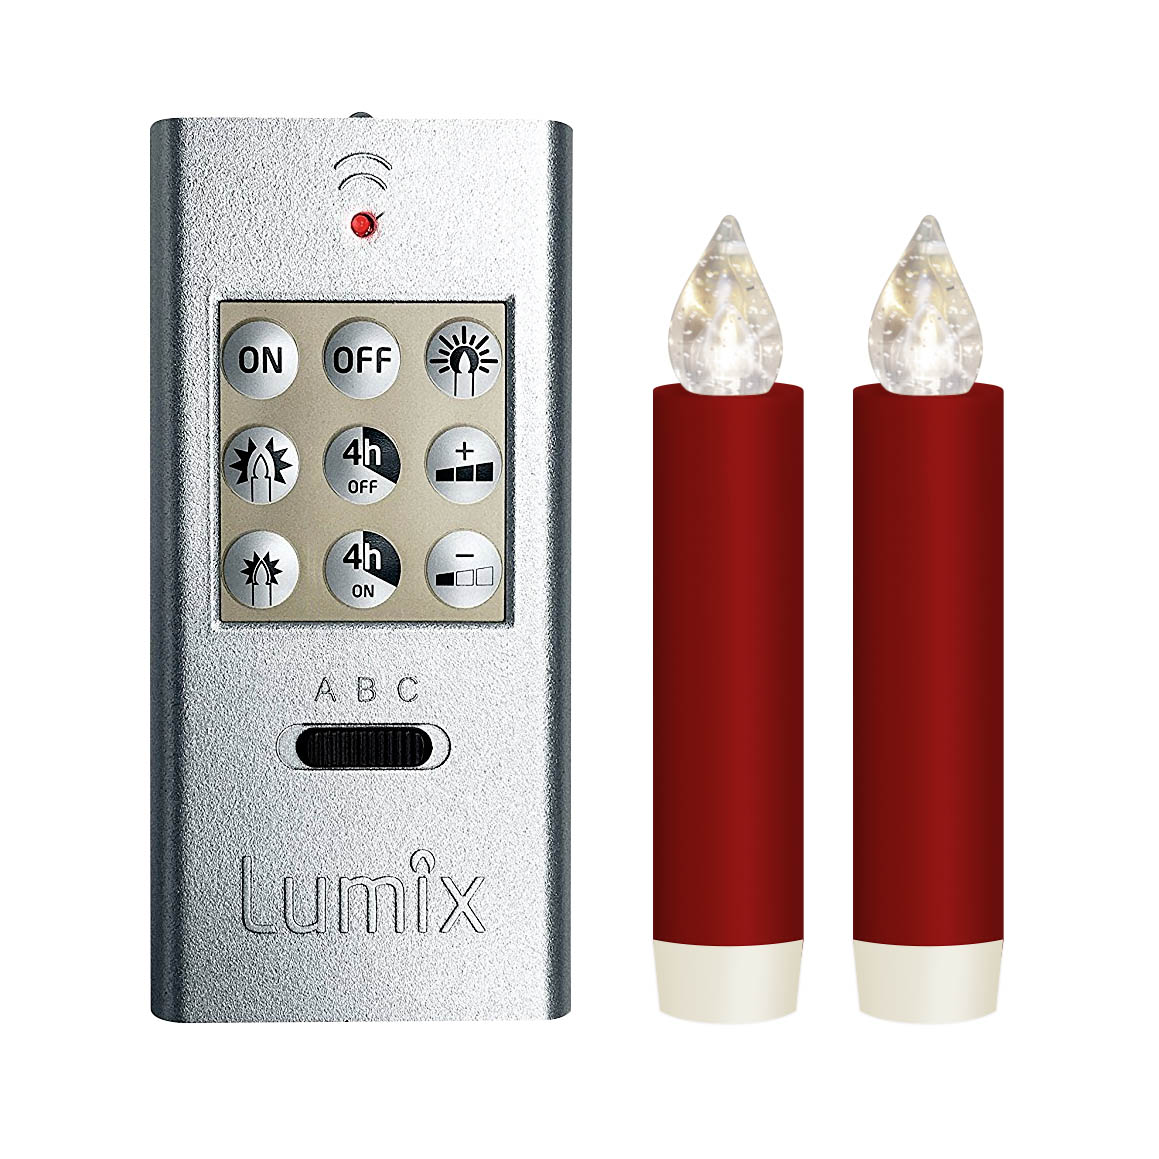 LUMIX CLASSIC MINI S -superlight- rot, Basis-Set, 2 Kerzen, 1 Fernbedienung, 2 Batterien